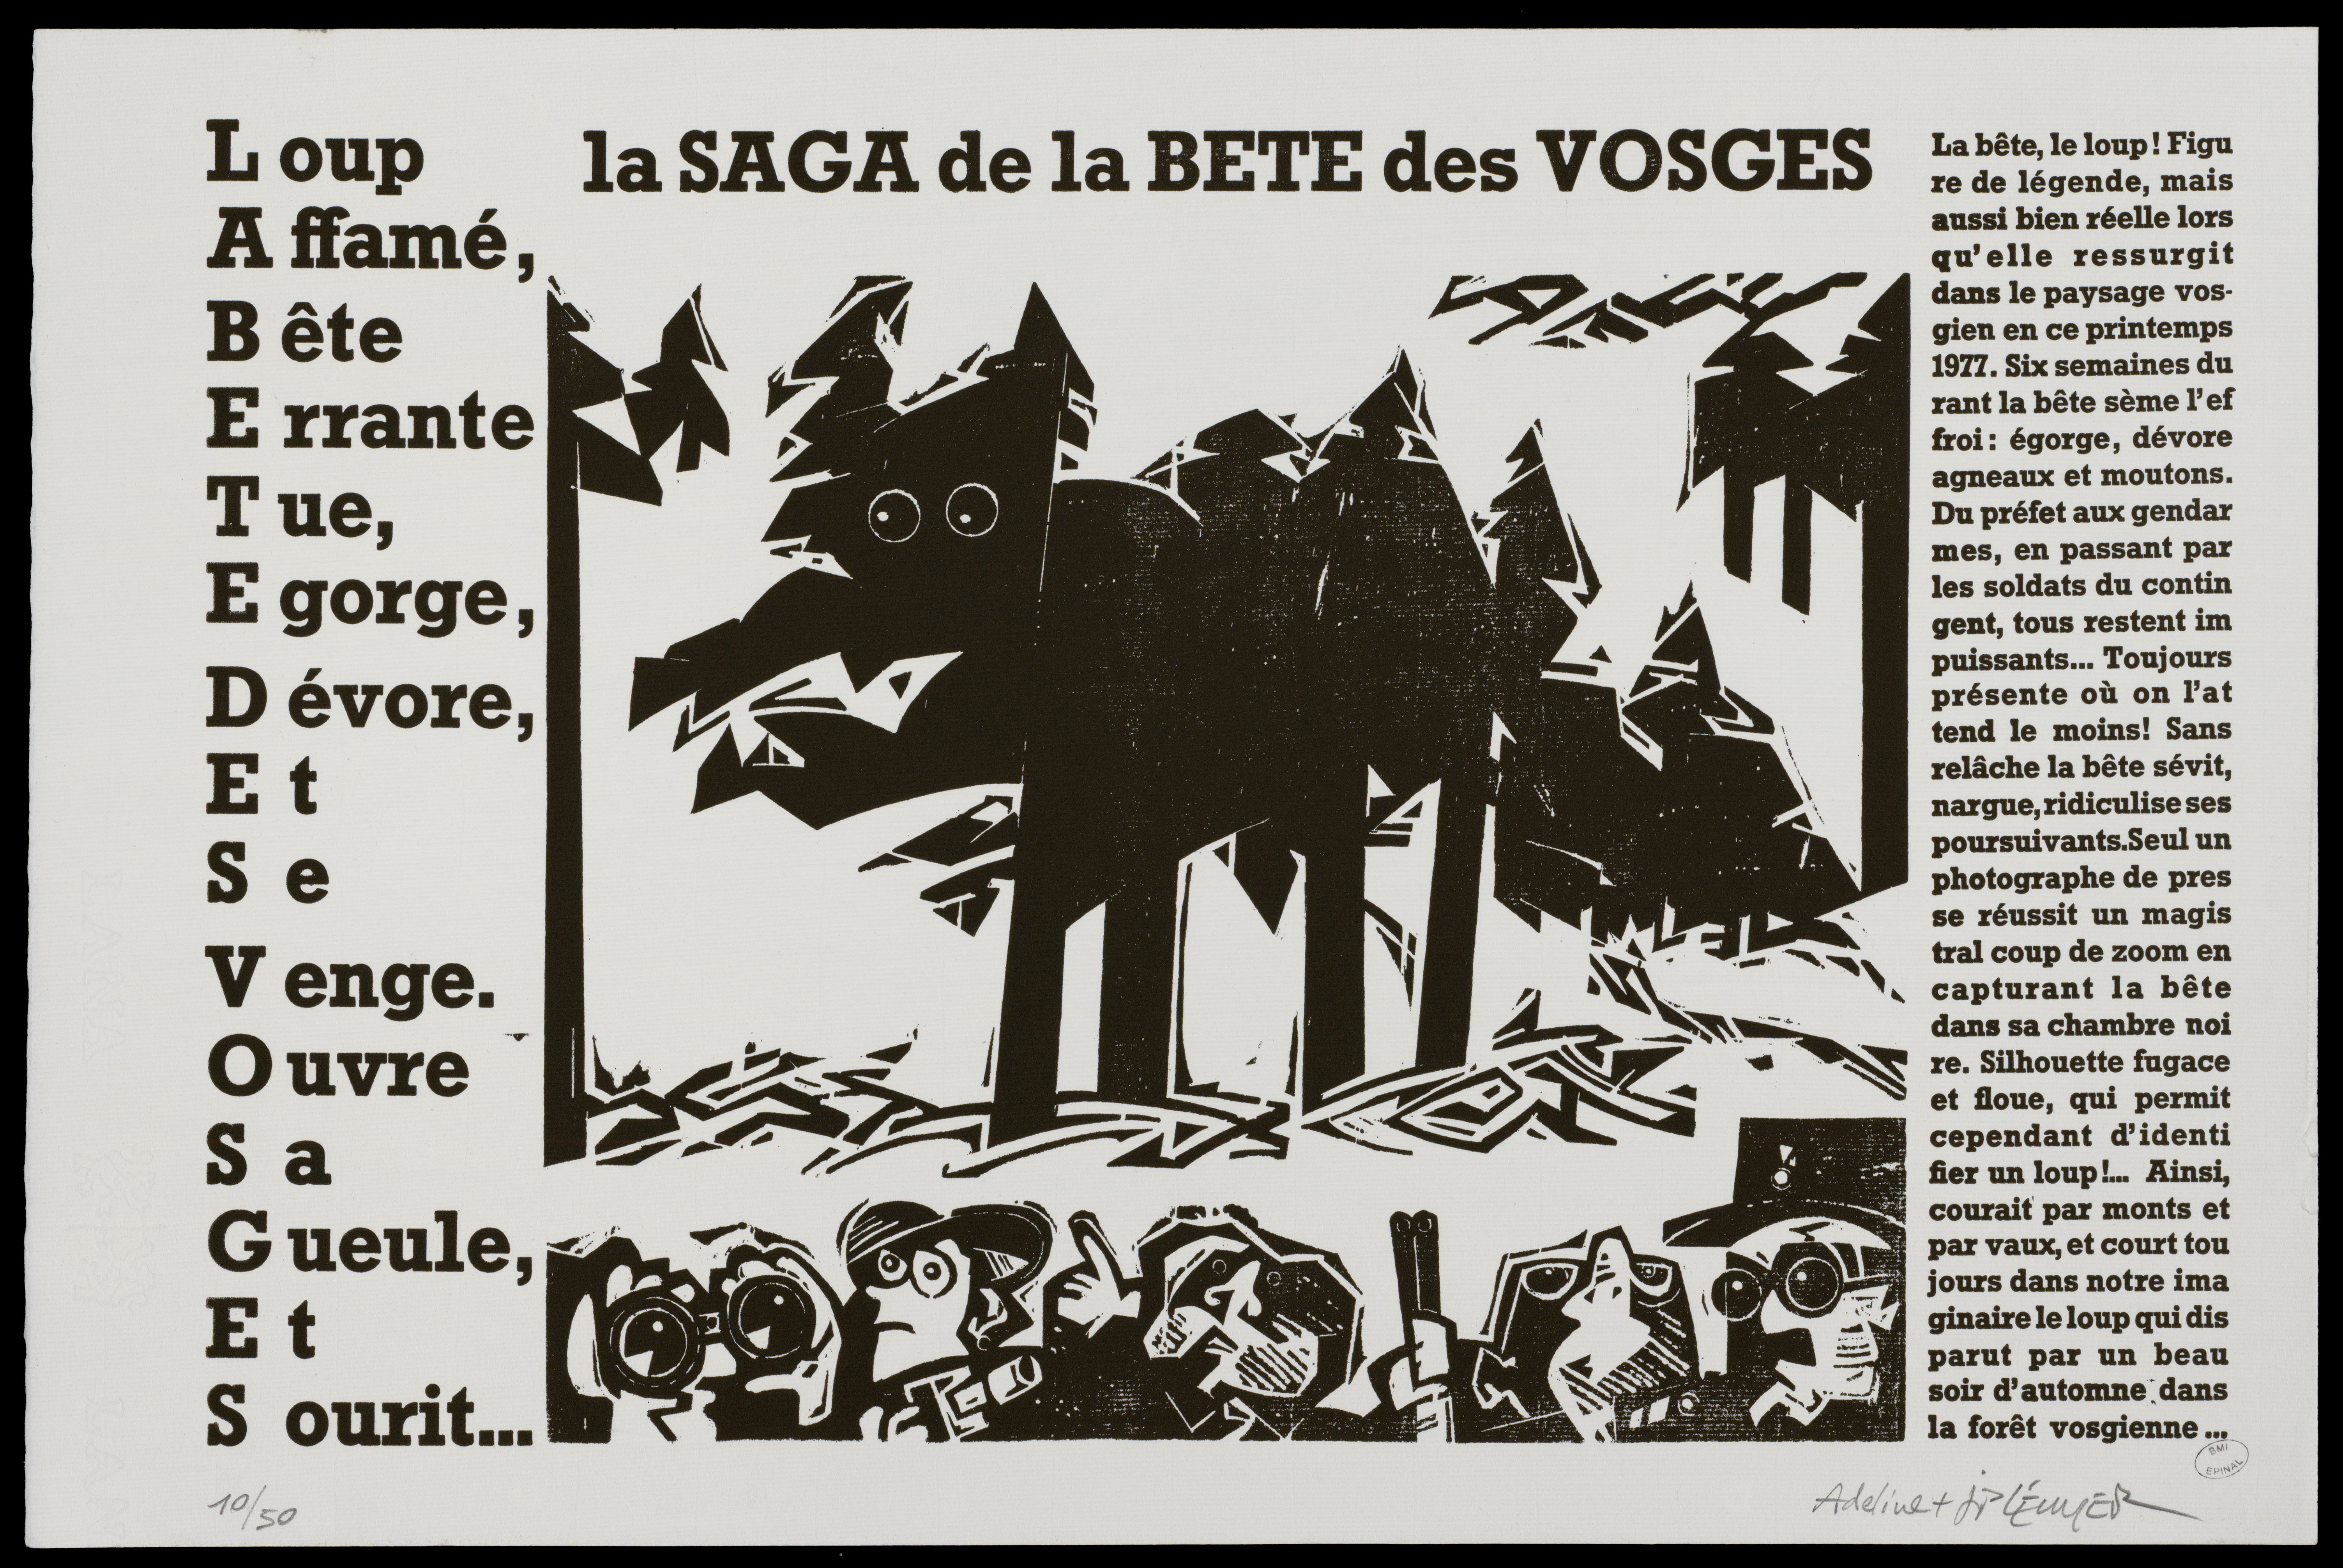 Contenu du La saga de la bête des Vosges